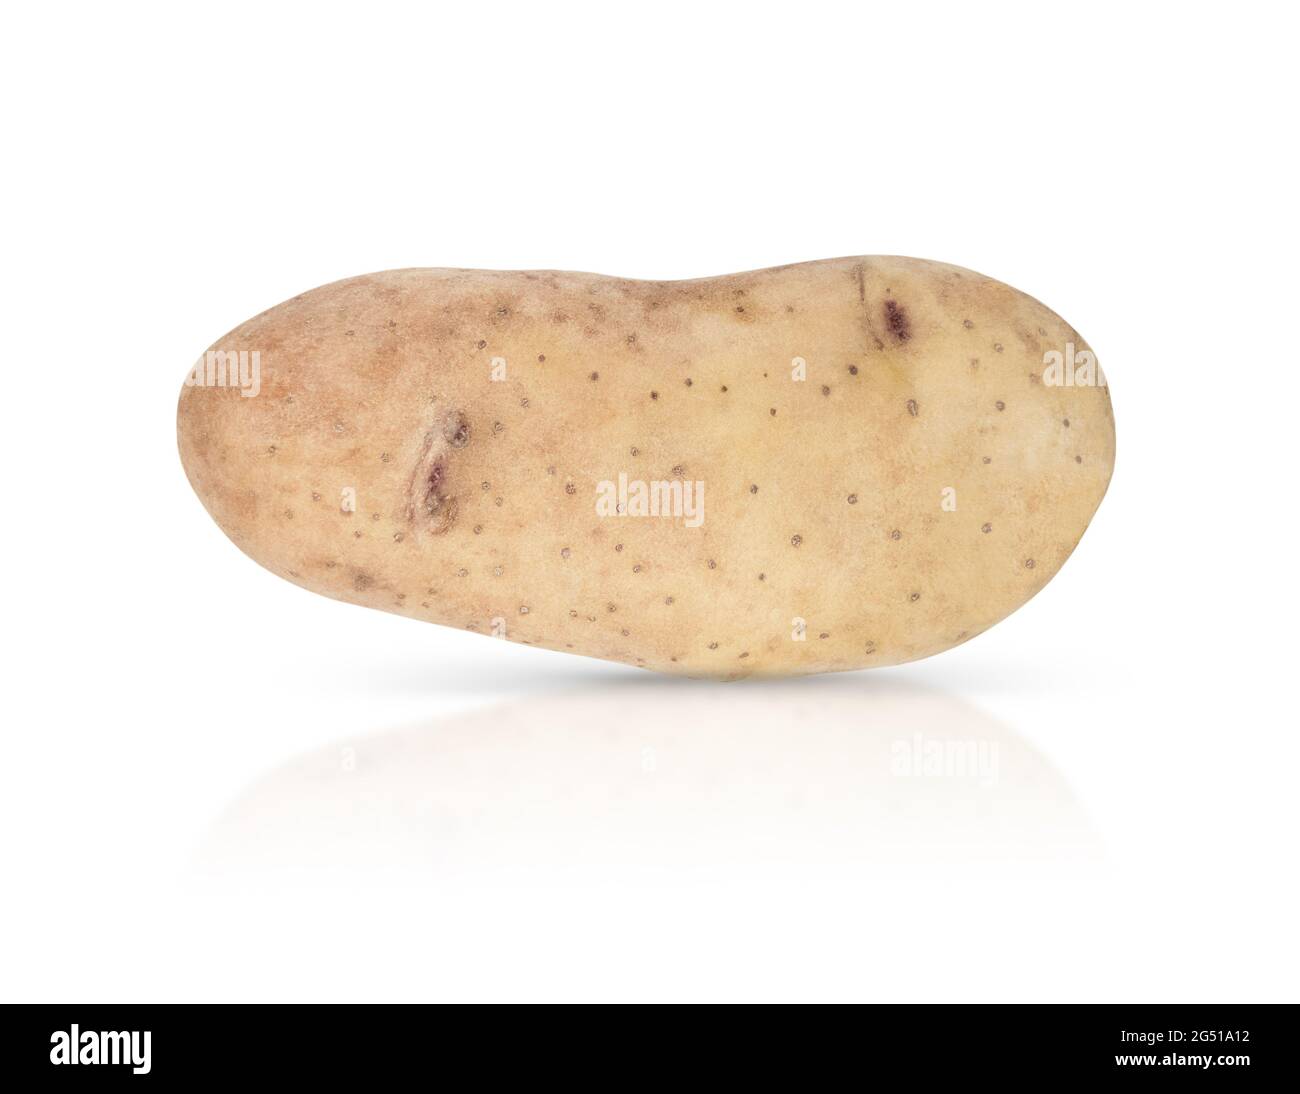 Jeune potatoe isolé sur fond blanc avec ombre et réflexion. Banque D'Images